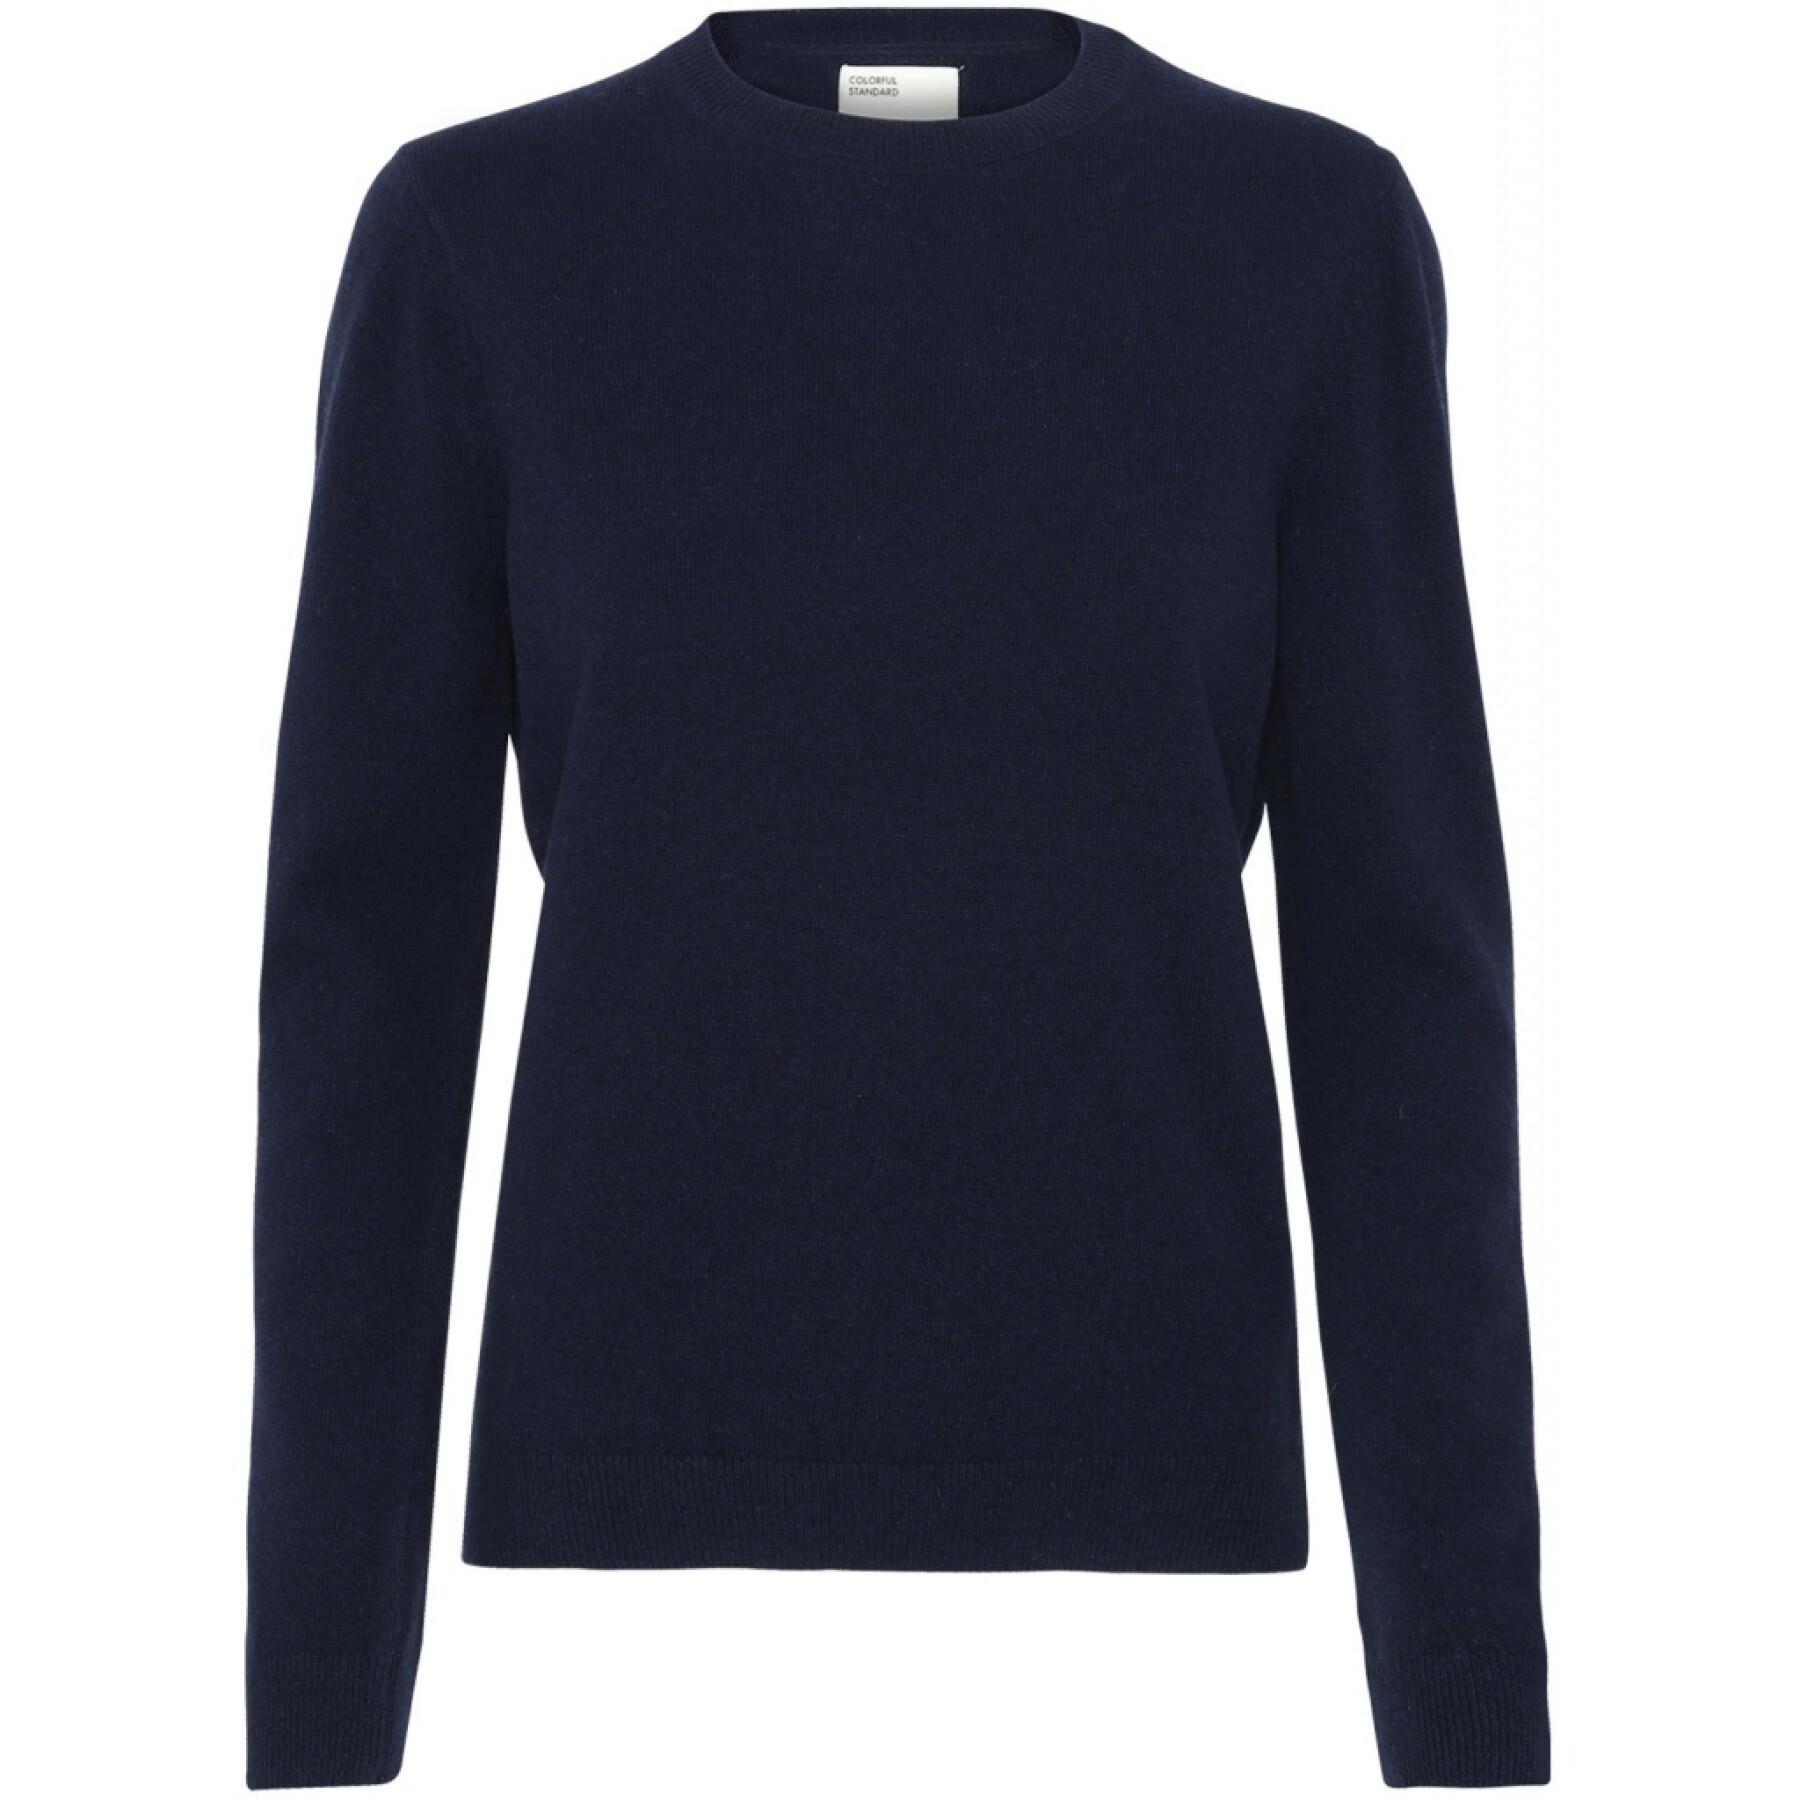 Maglione girocollo in lana da donna Colorful Standard light merino navy blue